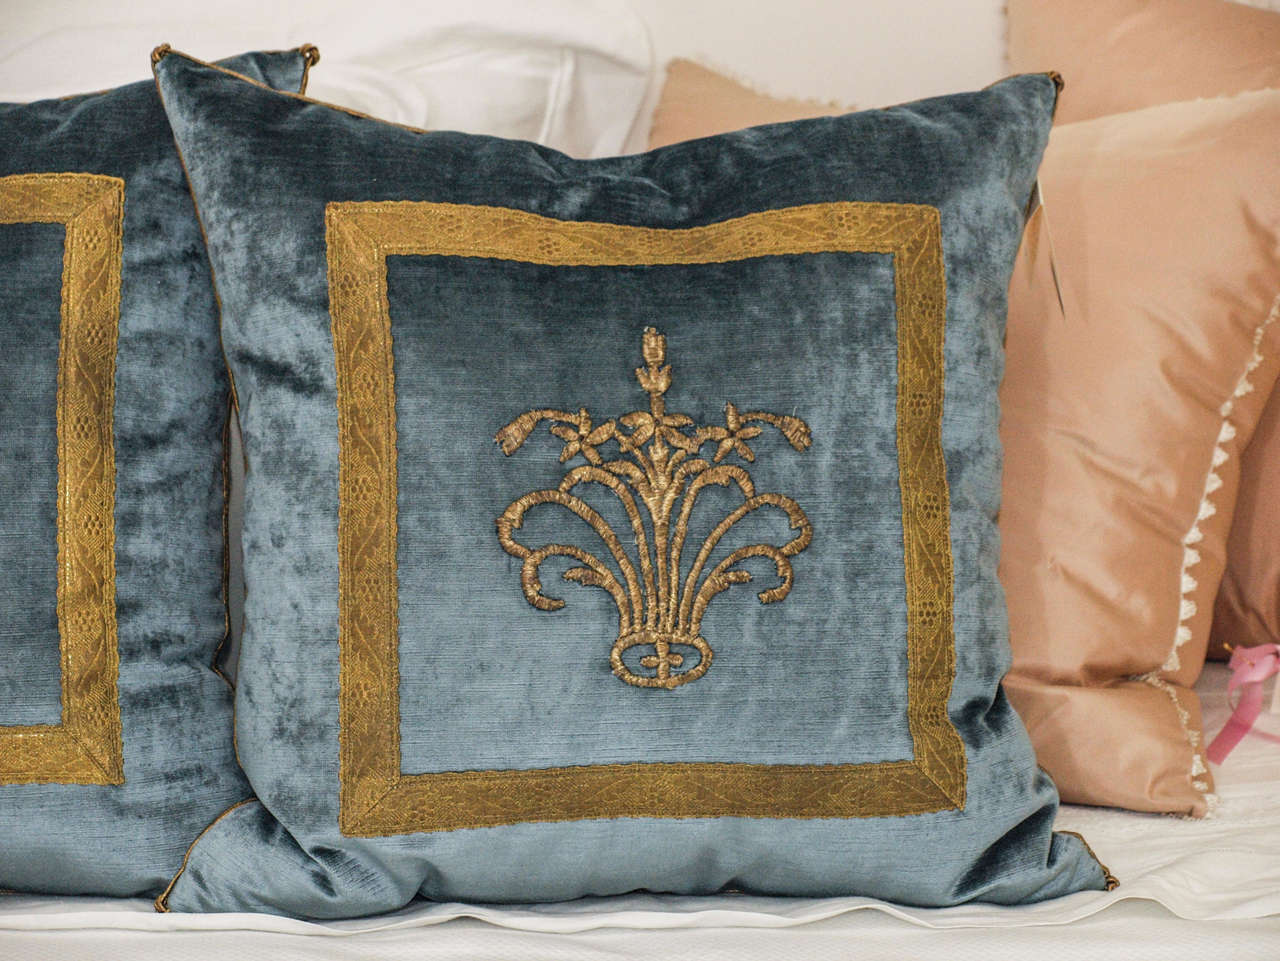 American Antique Ottoman Empire Gold Metallic Embroidery B. VIZ Pillows